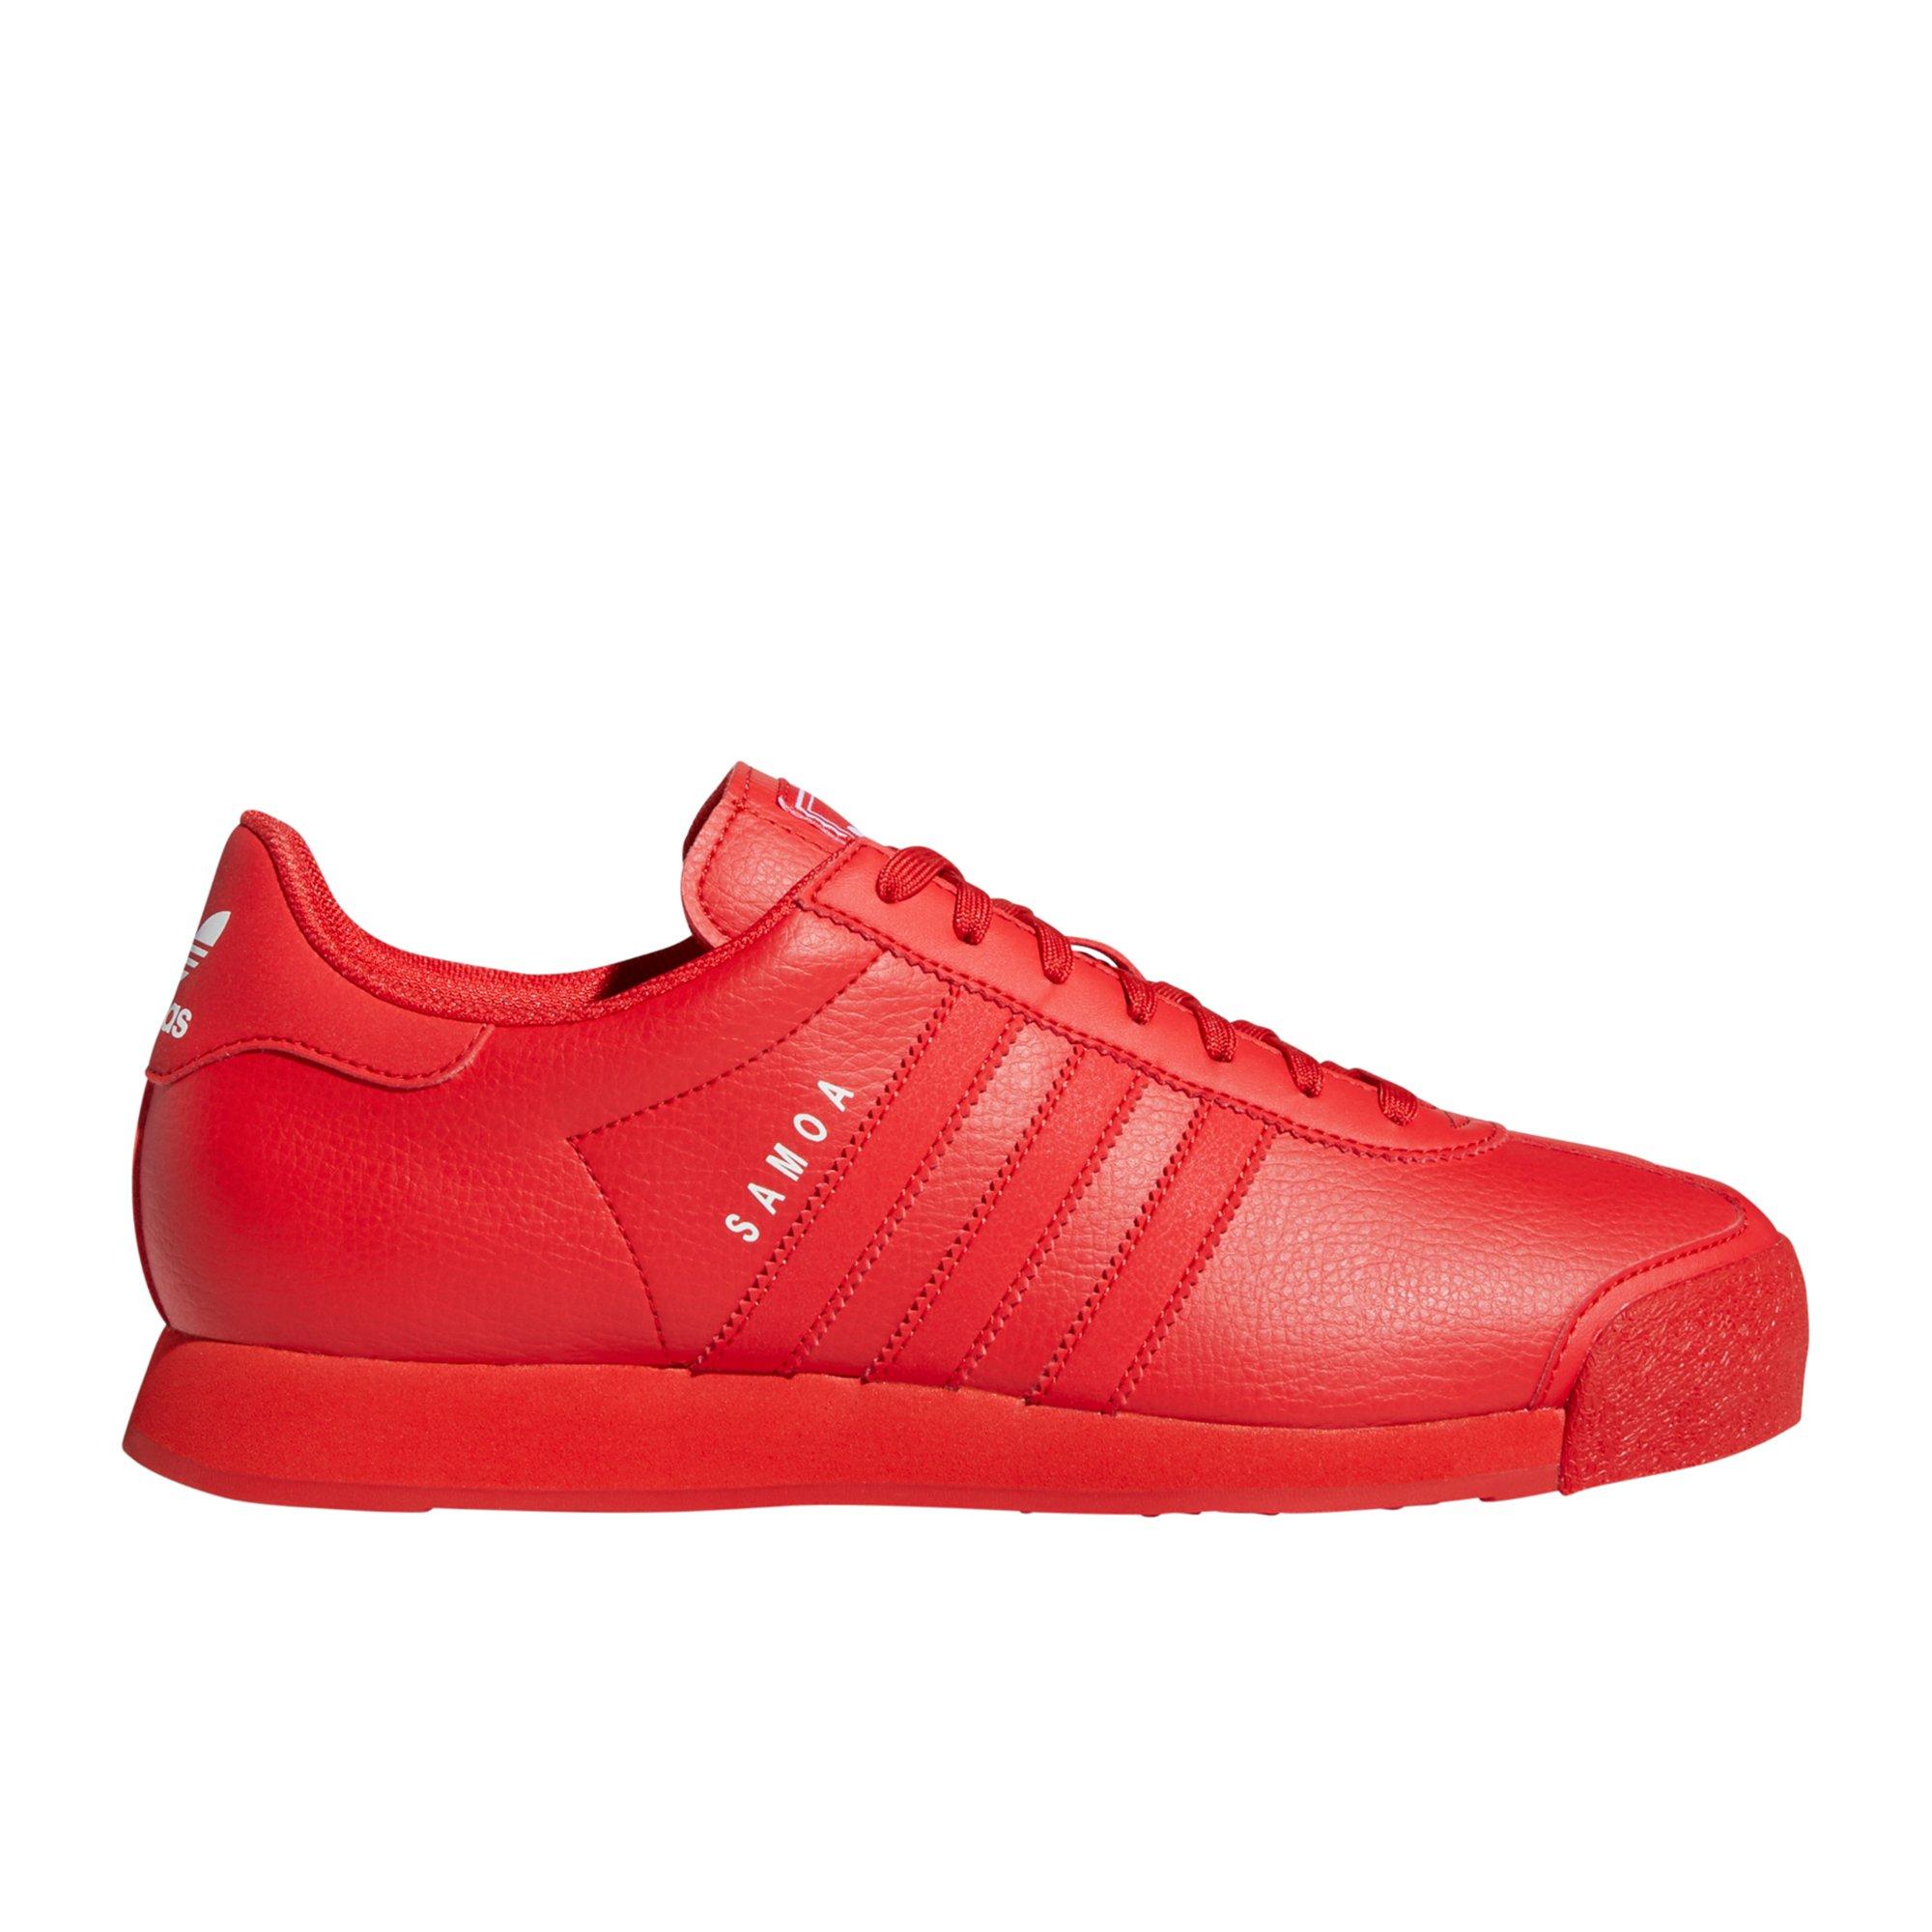 adidas mono samoa red men's shoe